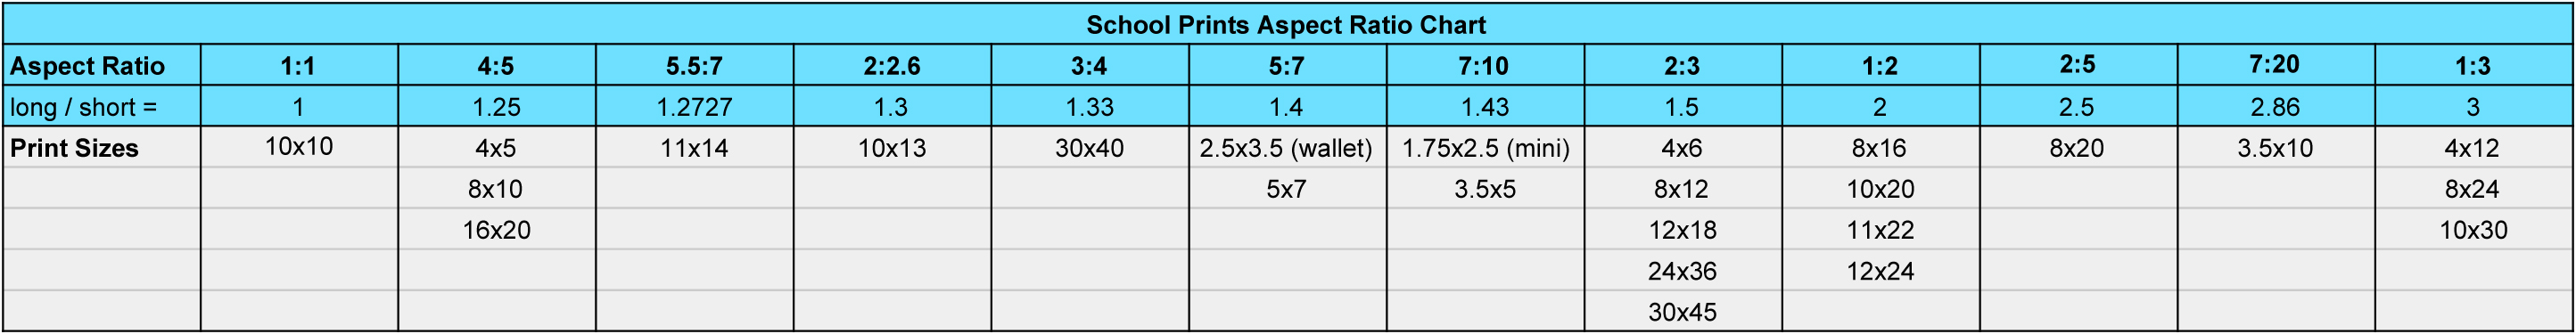 SP_Aspect_Ratio_Chart.jpg